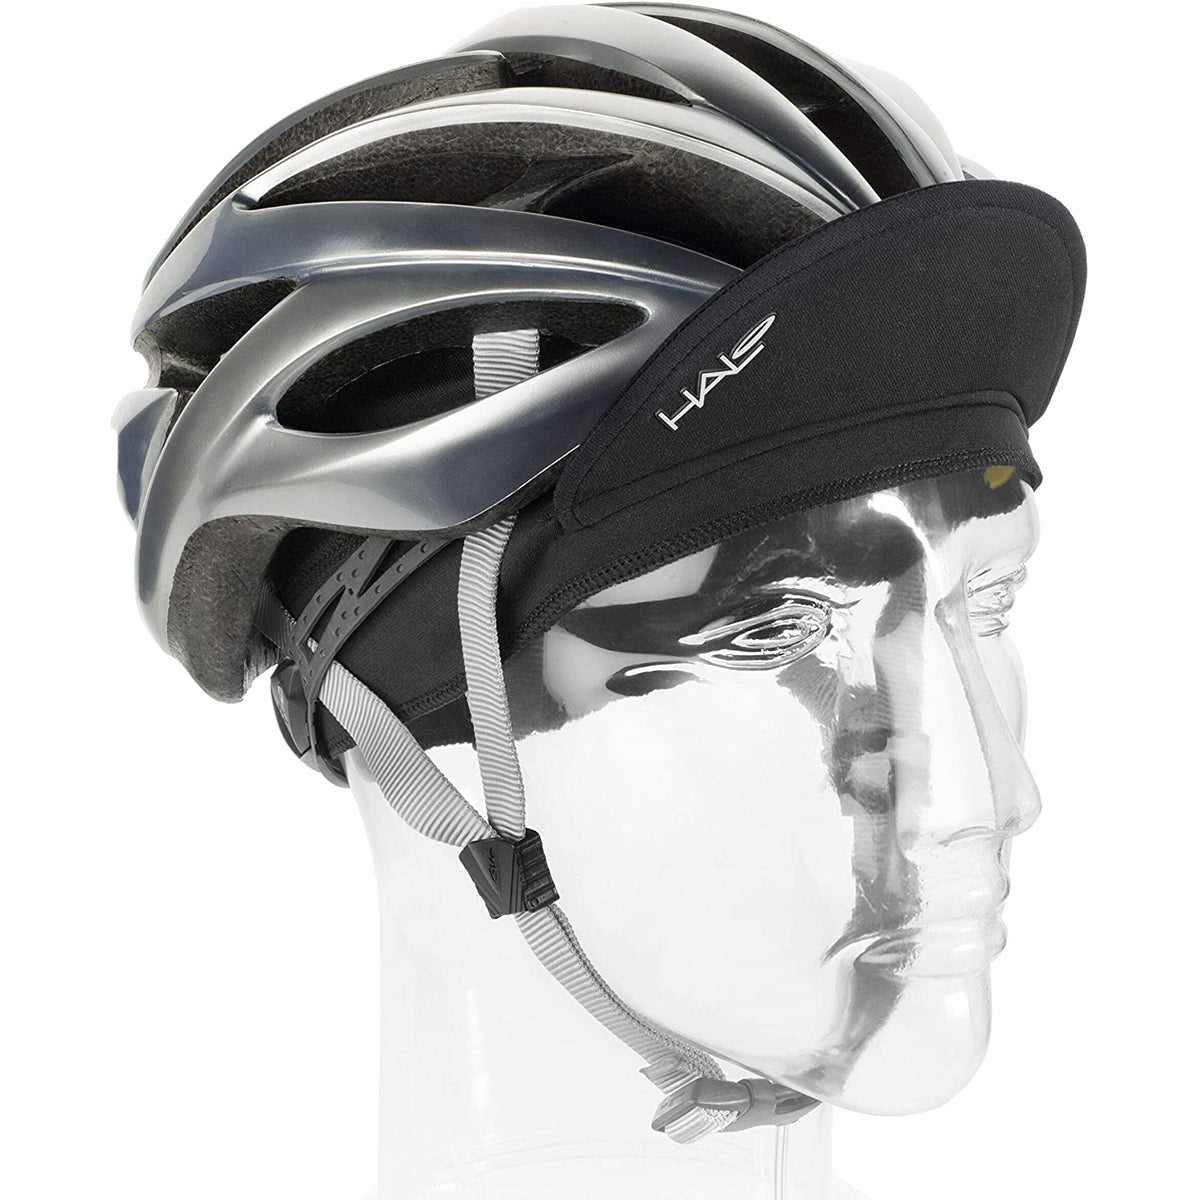 Halo Headband Cycling Cap - White Halo